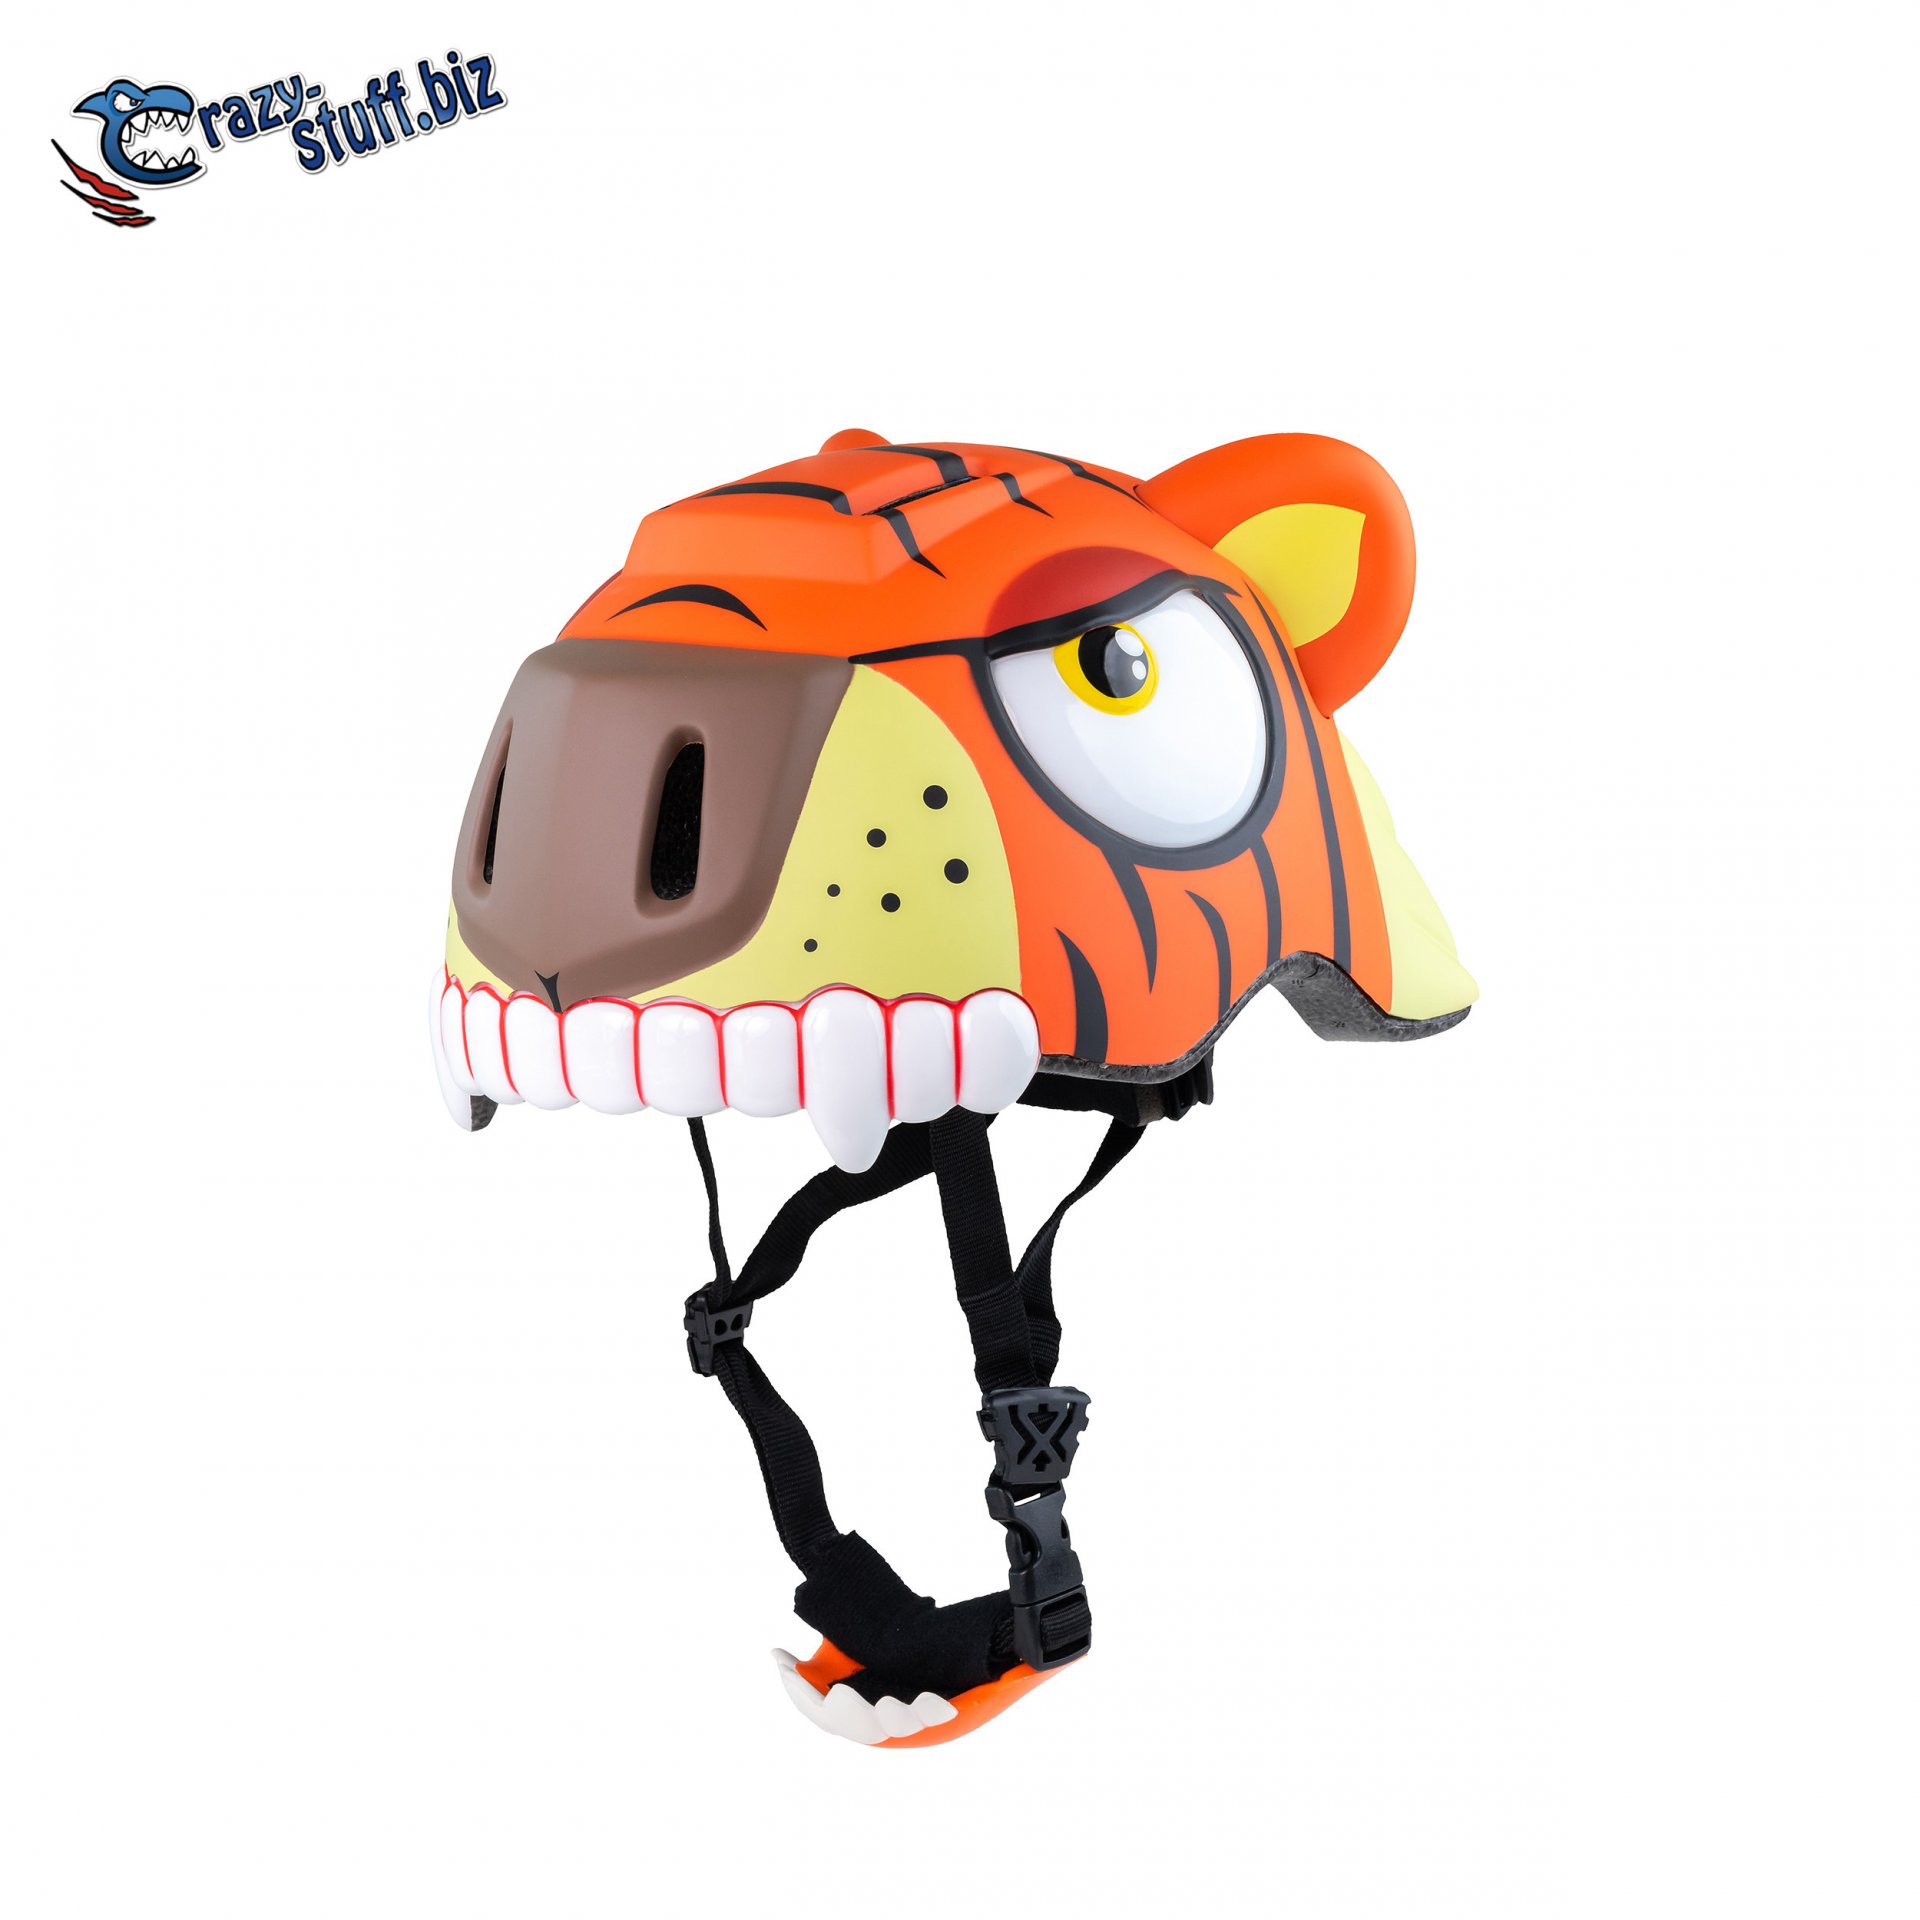 หมวกกันน็อคจักรยานสำหรับเด็ก Crazy Stuff ลายเสือโคร่ง Tiger (Size S 49-55cm)